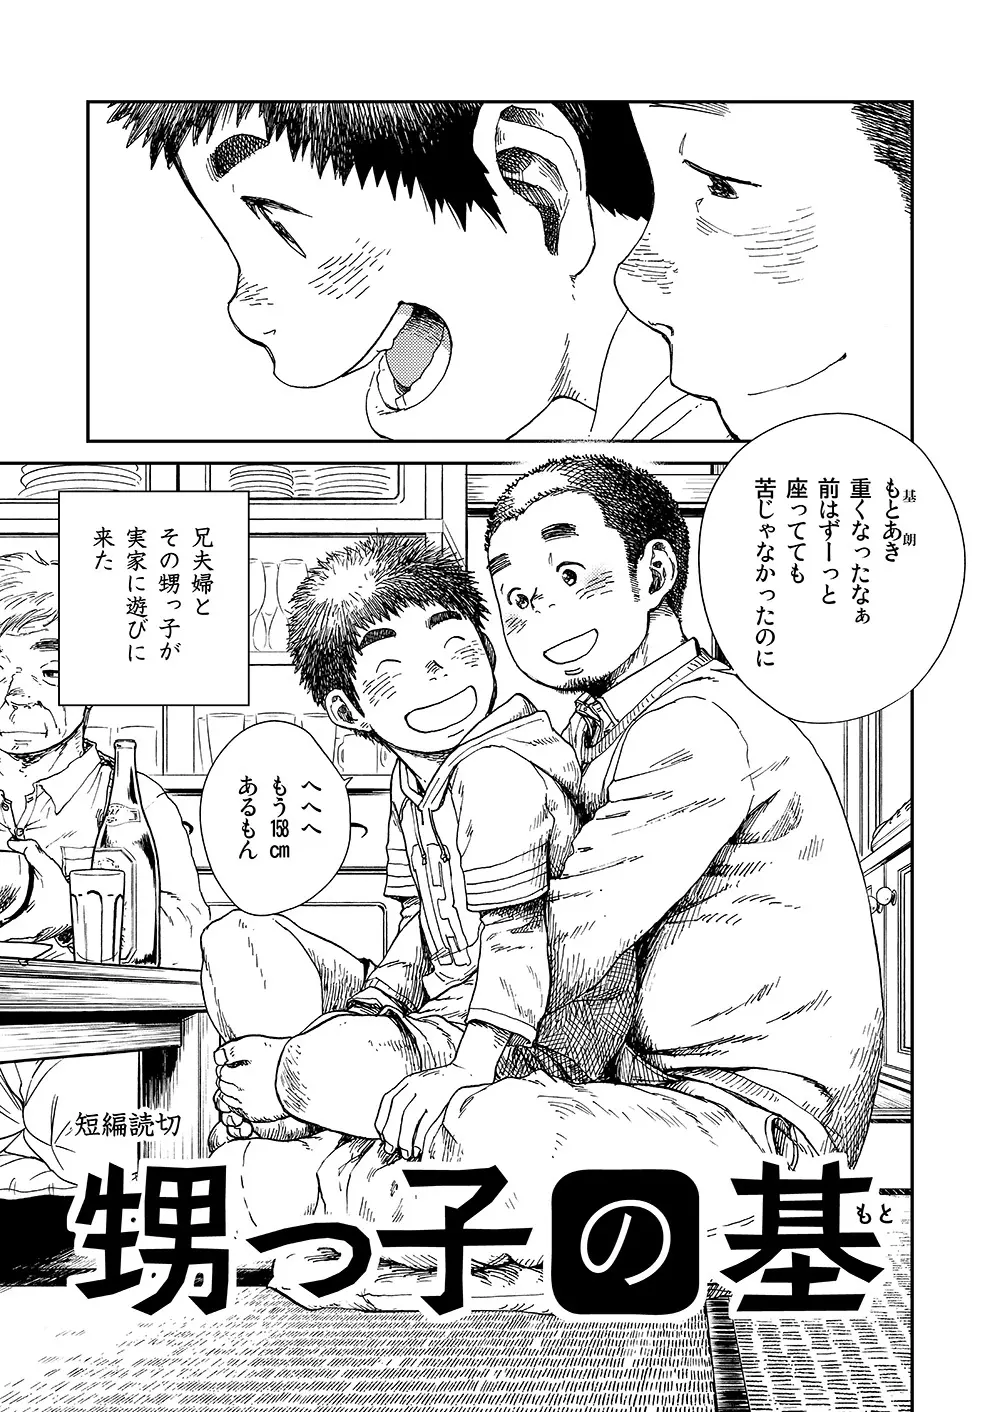 漫画少年ズーム vol.13 29ページ